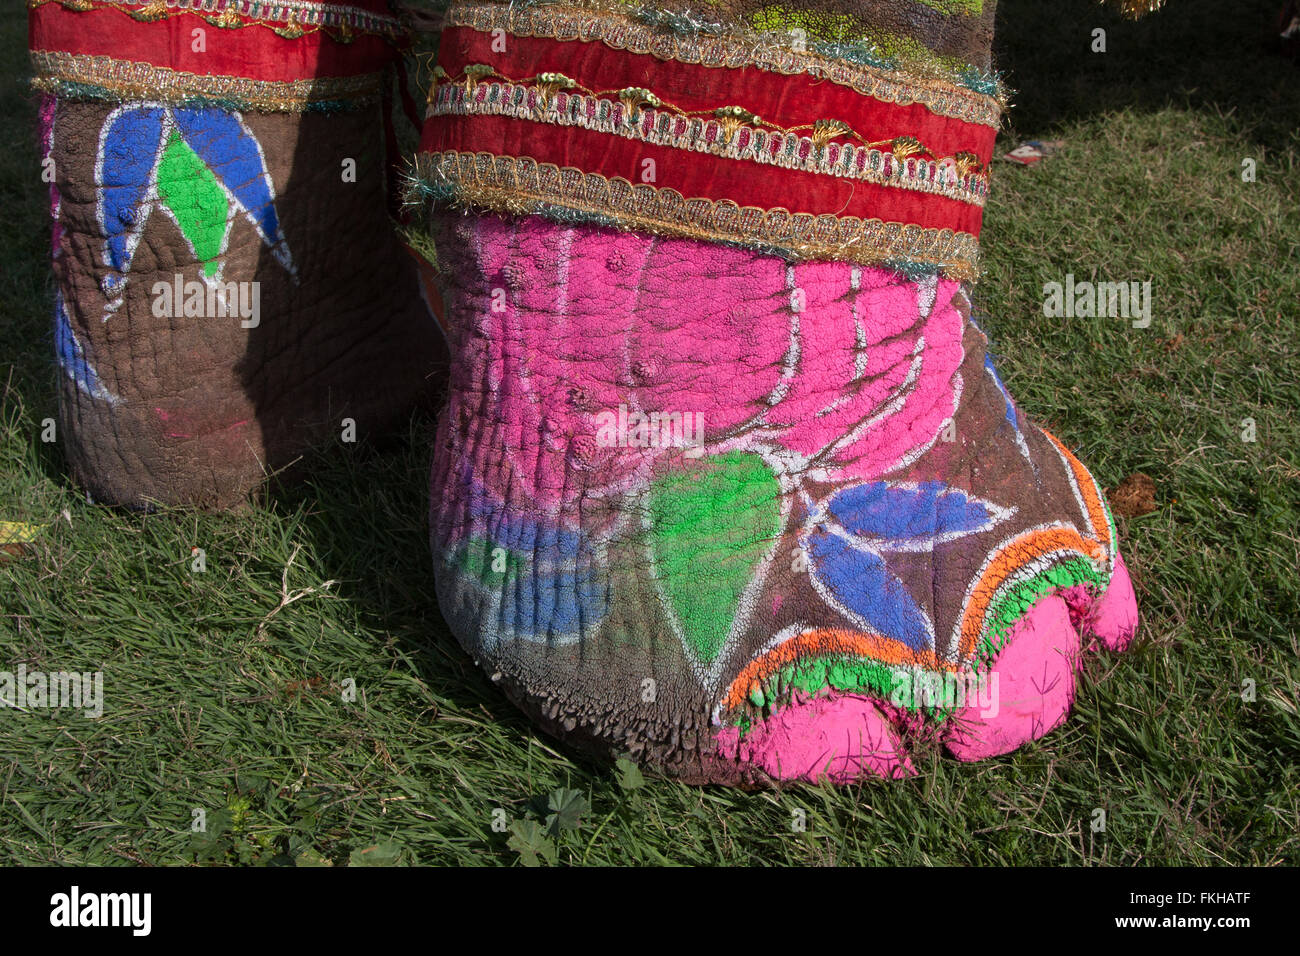 Dettaglio del dipinto di elefante durante il festival di elefante durante holi,celebrazione indù in Jaipur Rajasthan,l'India,l'Asia. Foto Stock